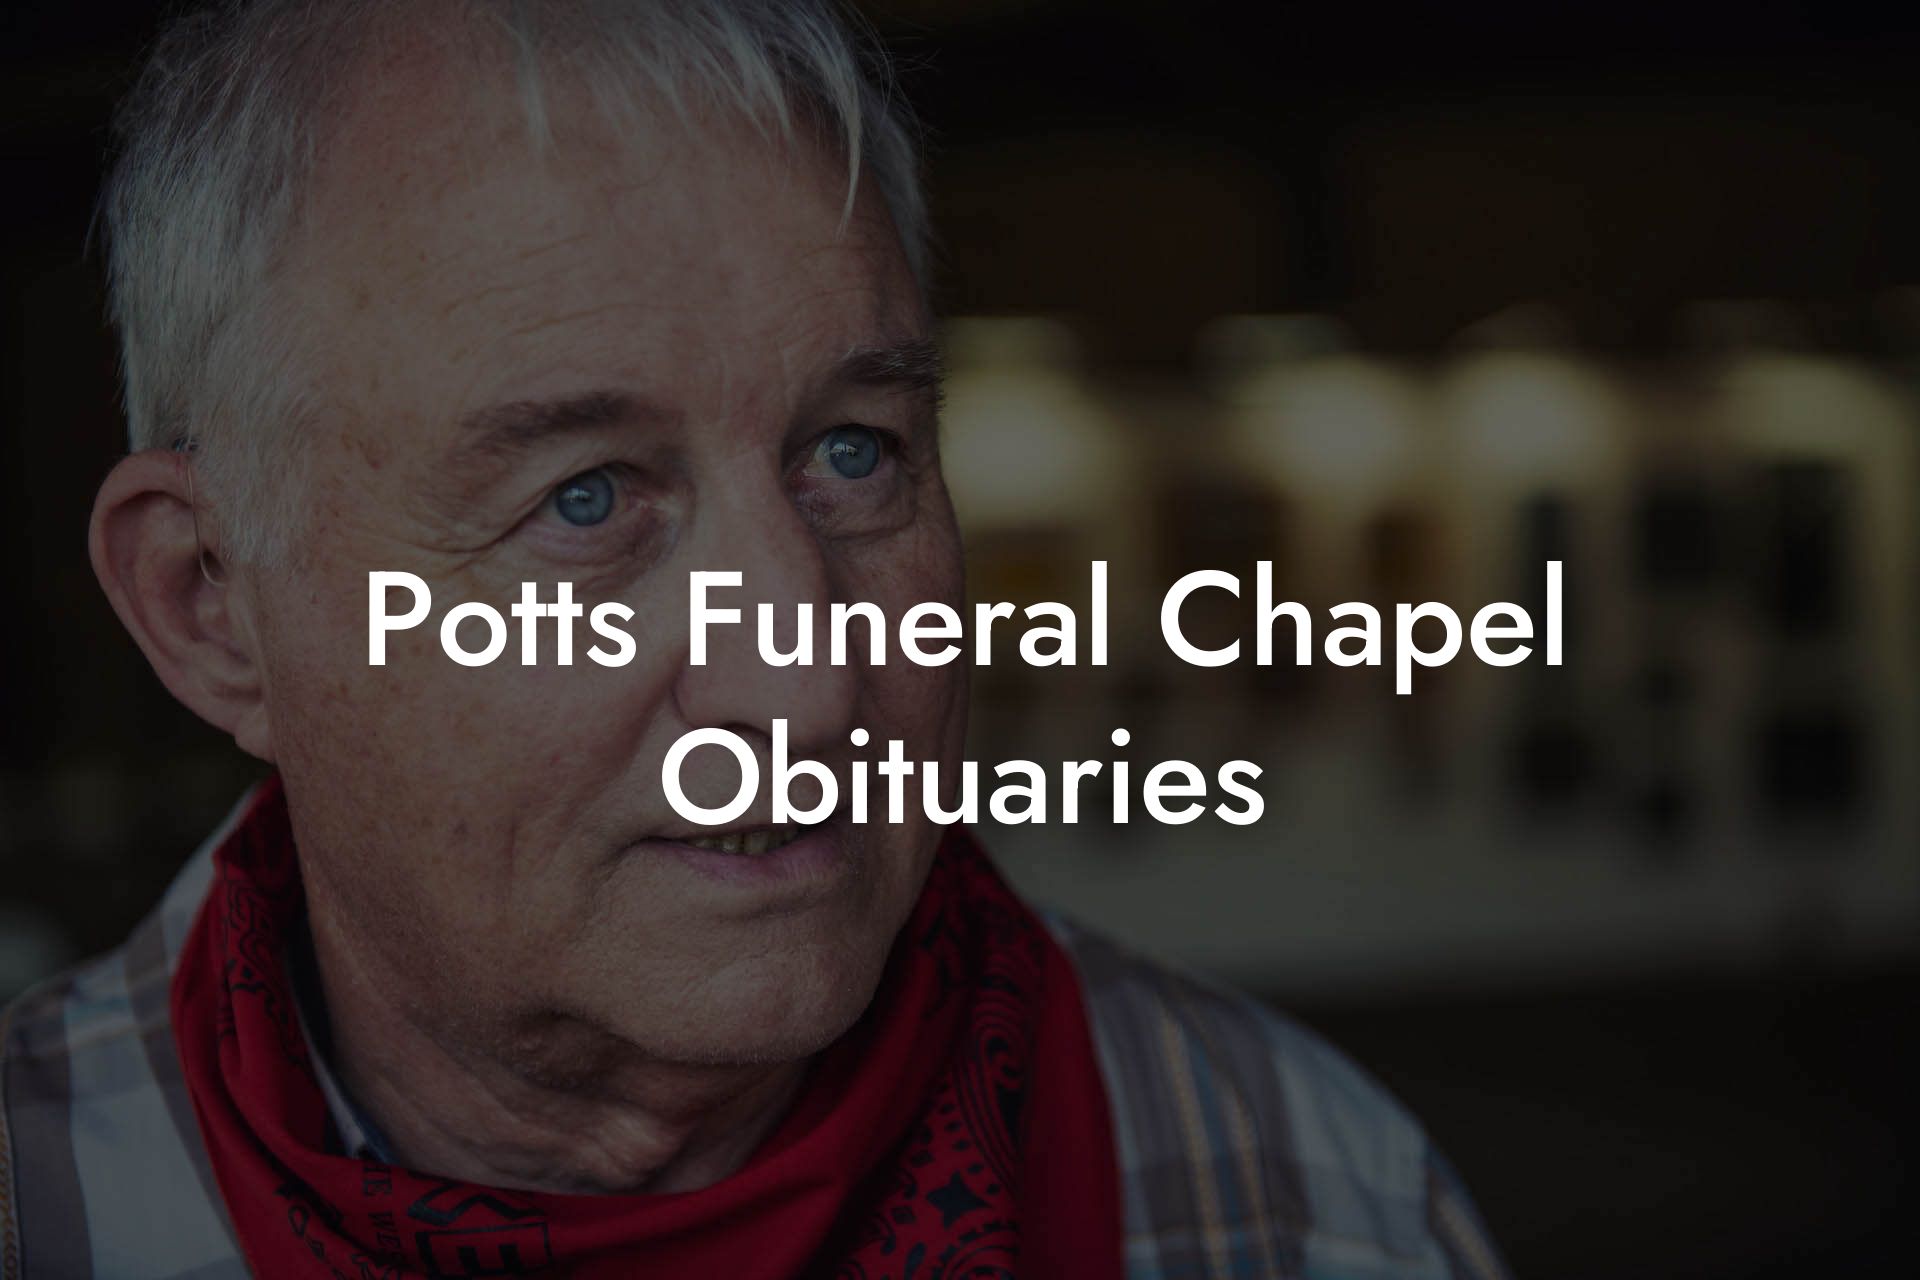 Potts Funeral Chapel Obituaries